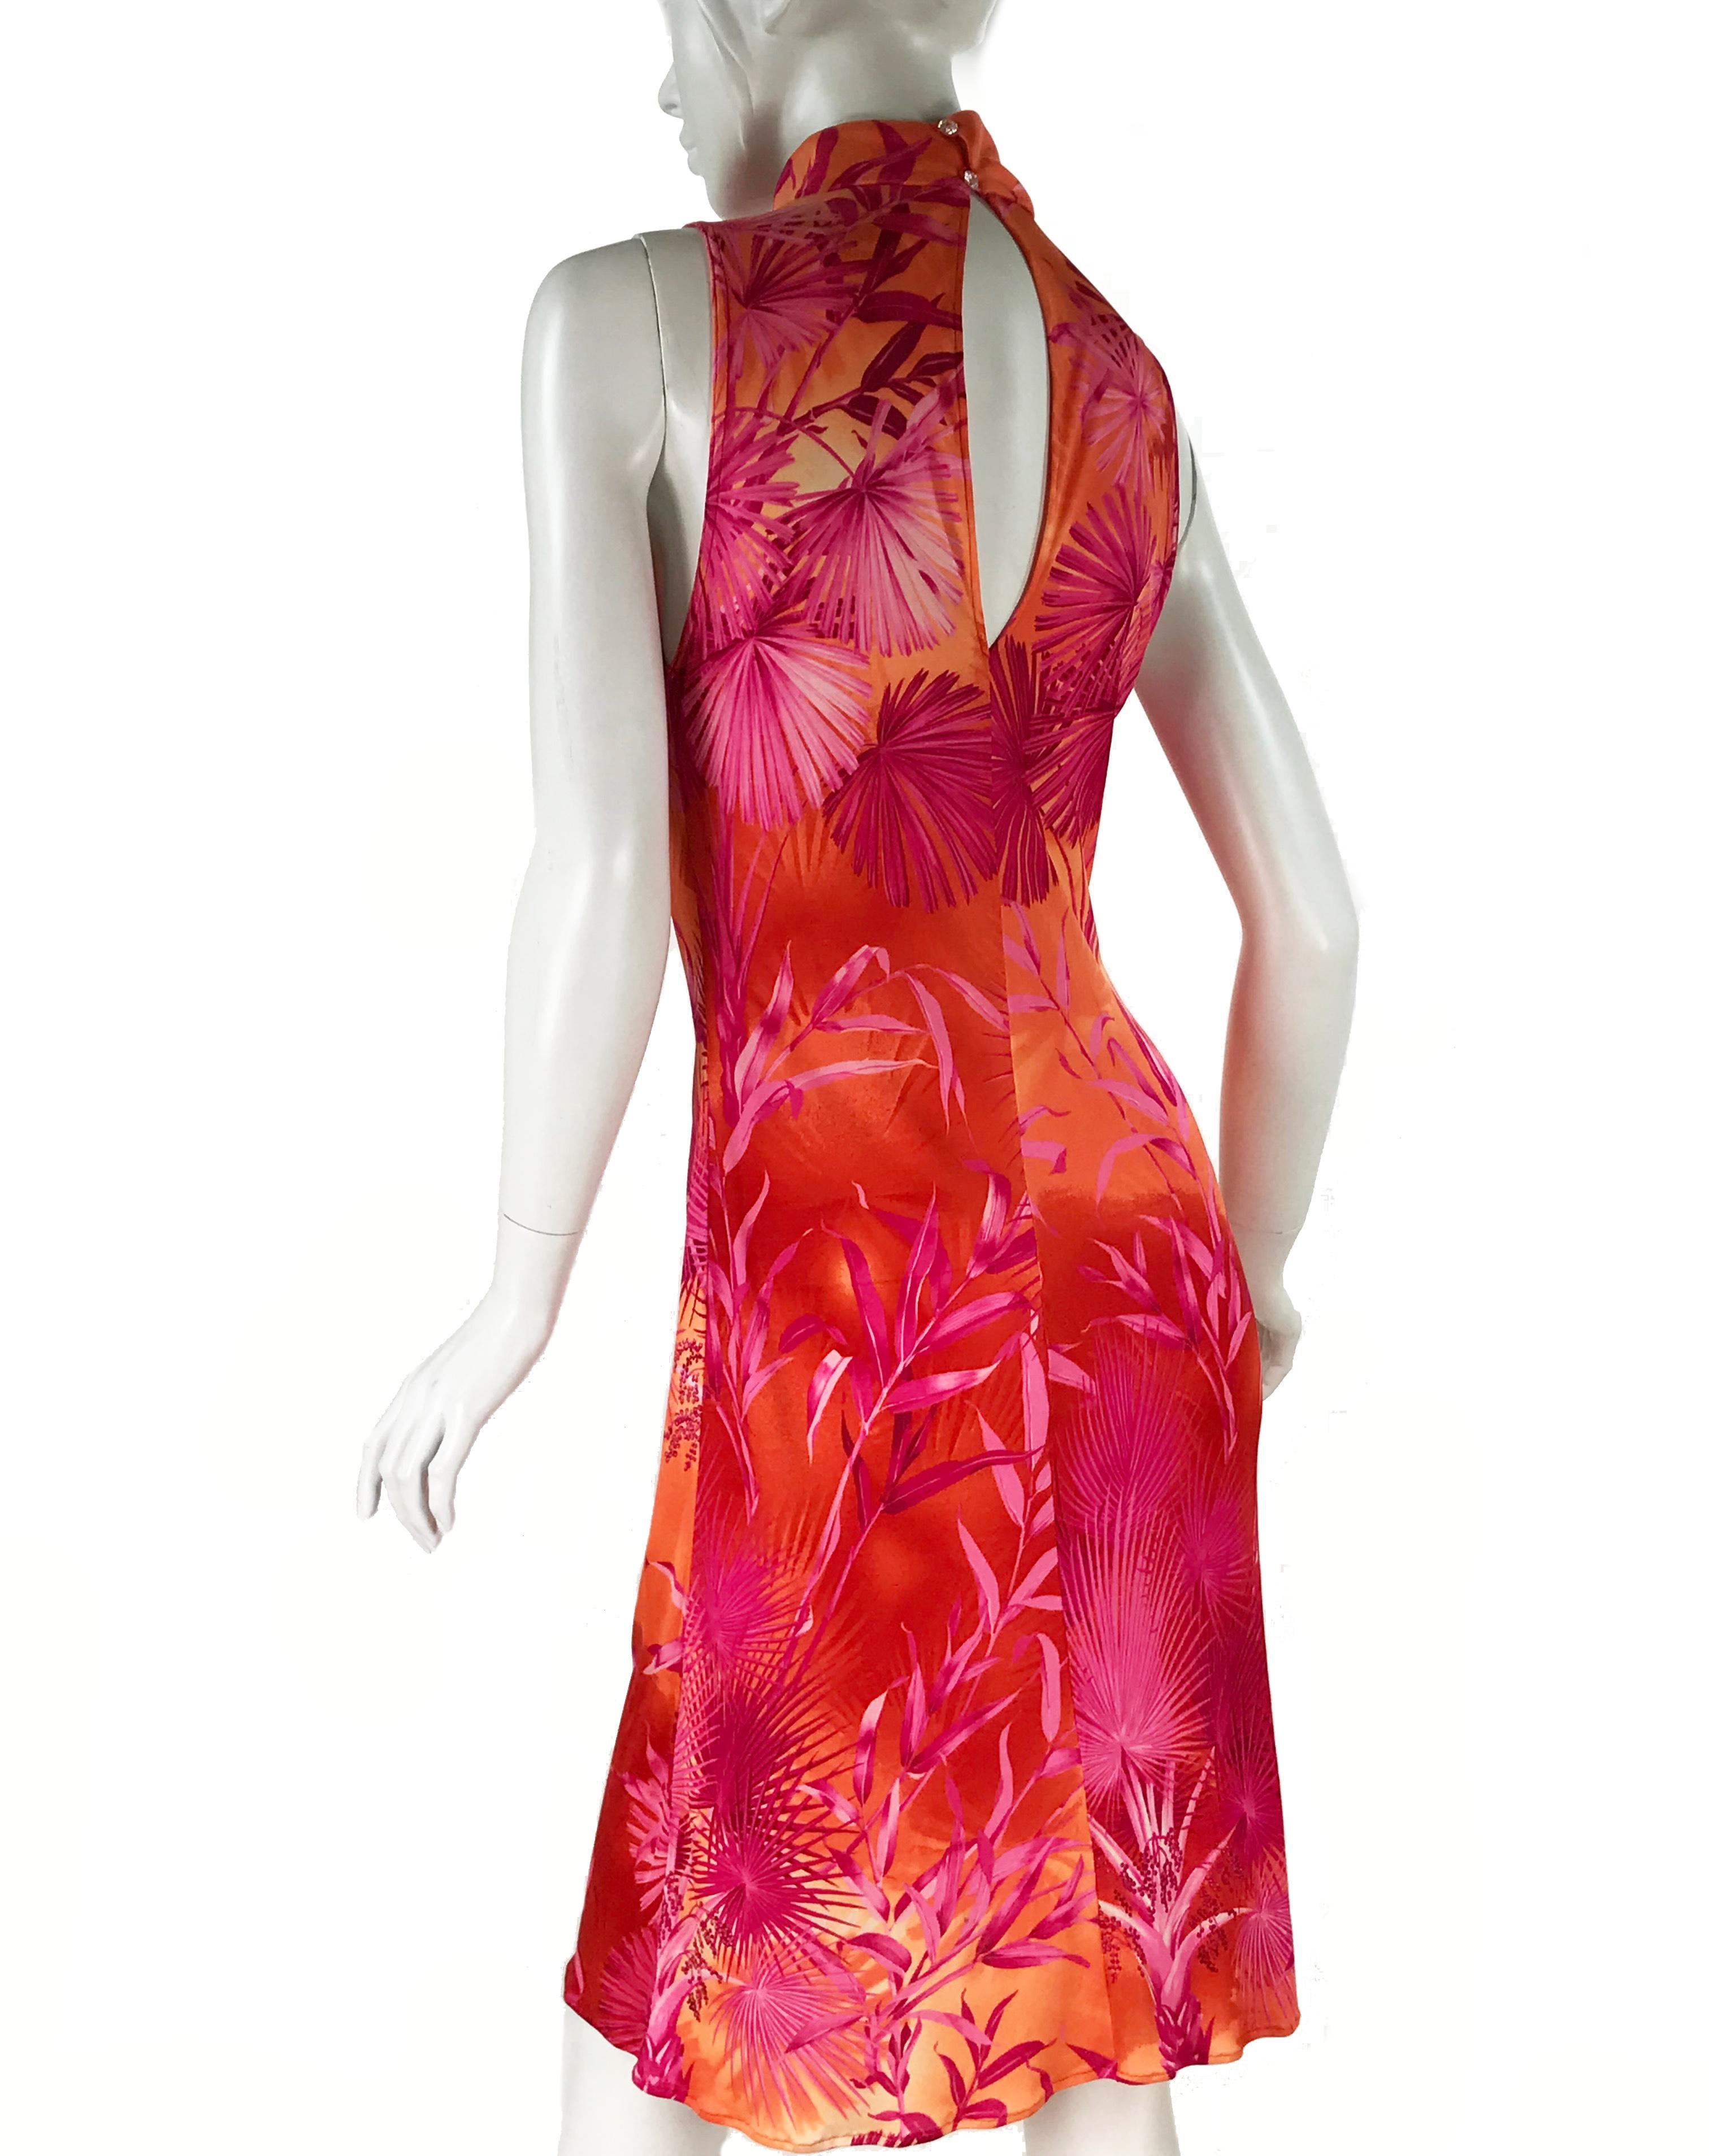 S/S 2000 Vintage Gianni Versace Couture Palm Print Dress

IT Size 42

Excellent condition